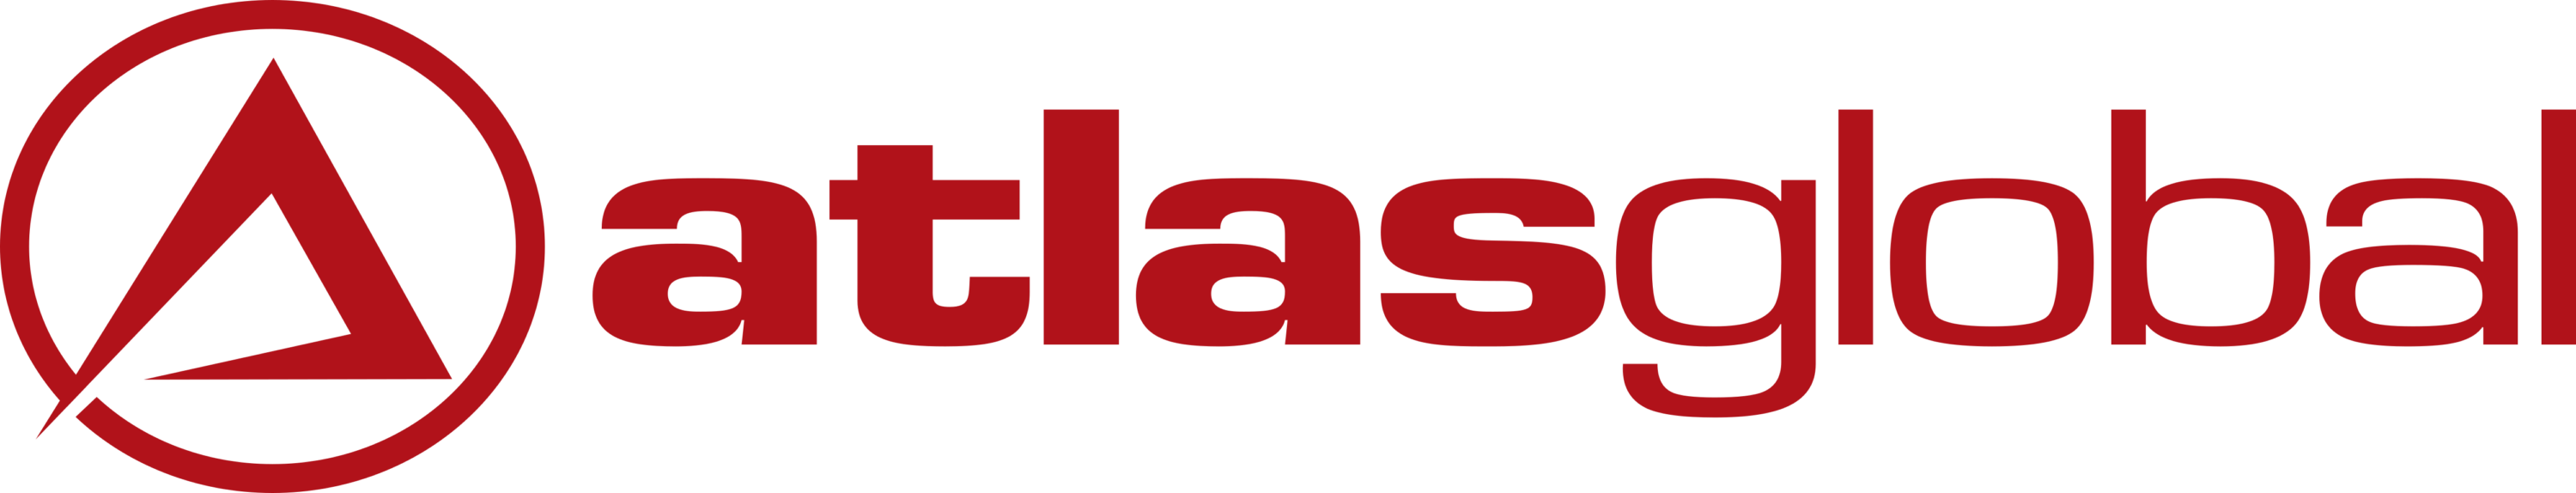 AtlasGlobal Logo